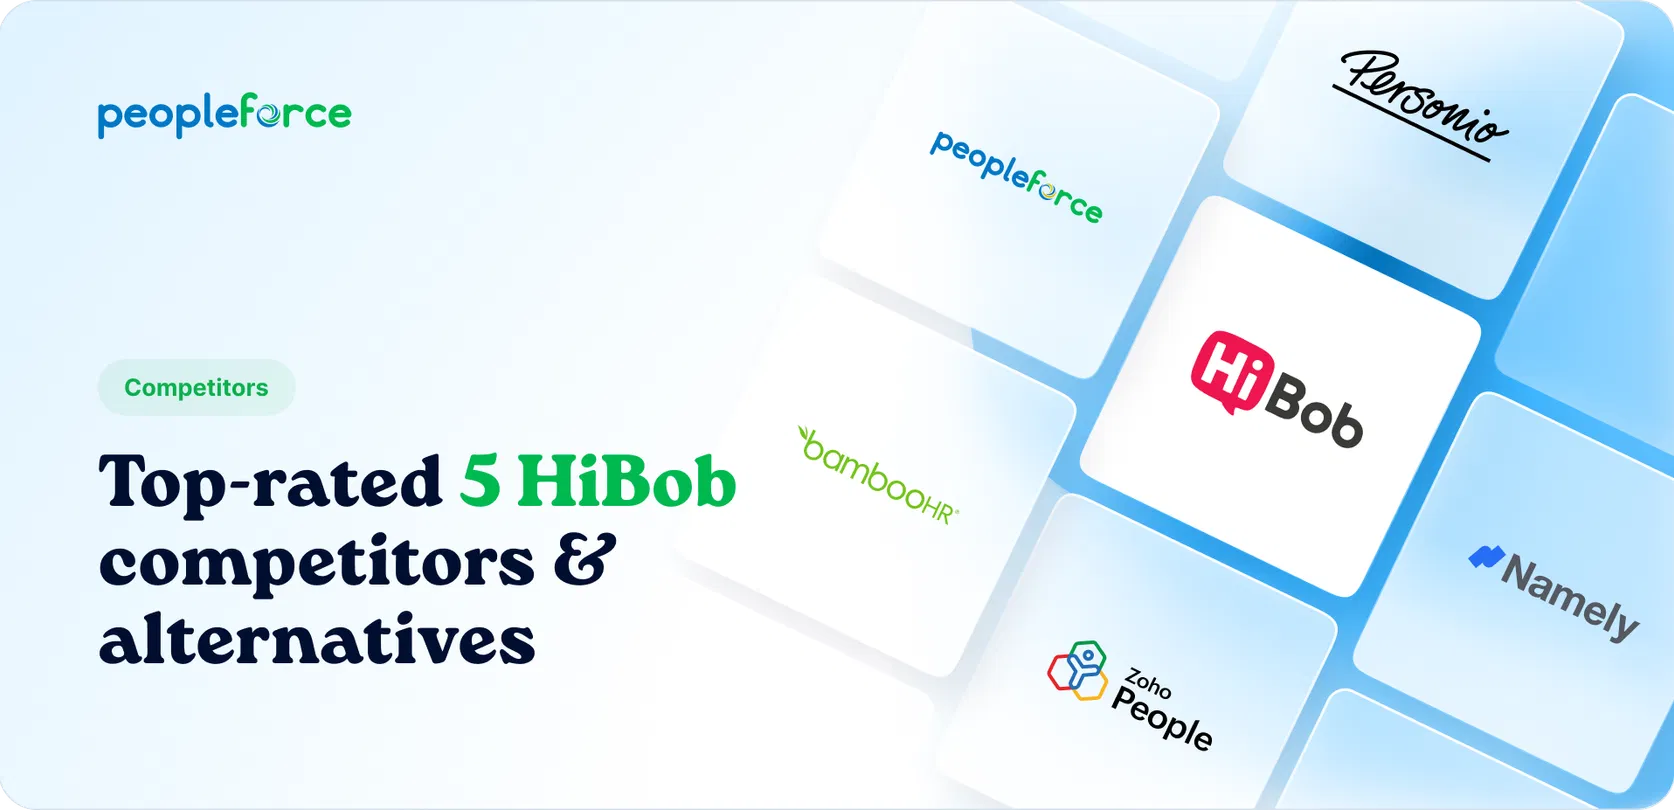 Top-rated 5 HiBob competitors & alternatives